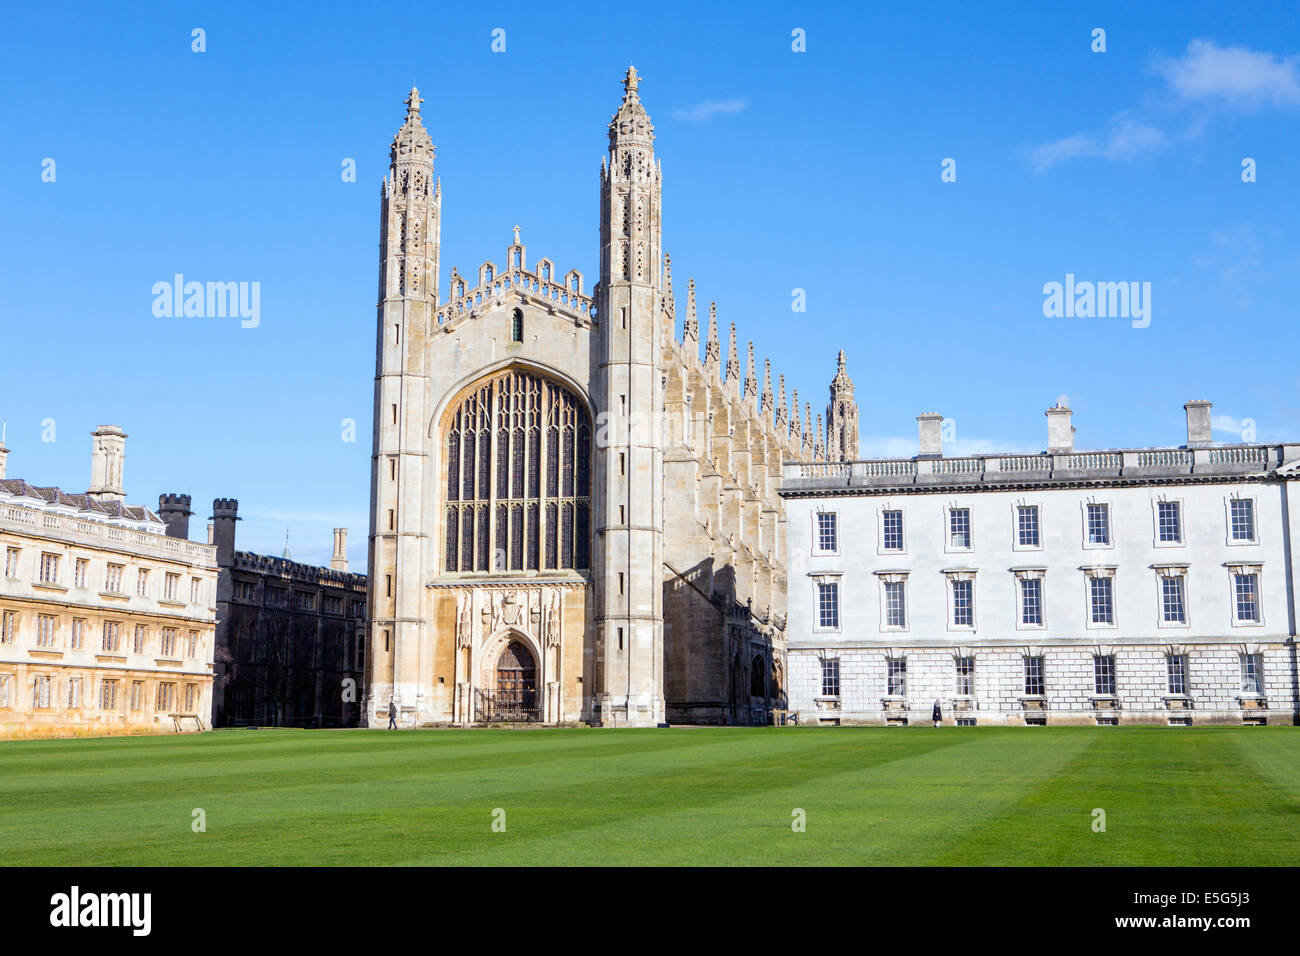 Royaume-Uni, Cambridge, Université de Cambridge, Kings College montrant la célèbre chapelle gothique et le bâtiment James Gibbs, depuis la rivière Cam Banque D'Images